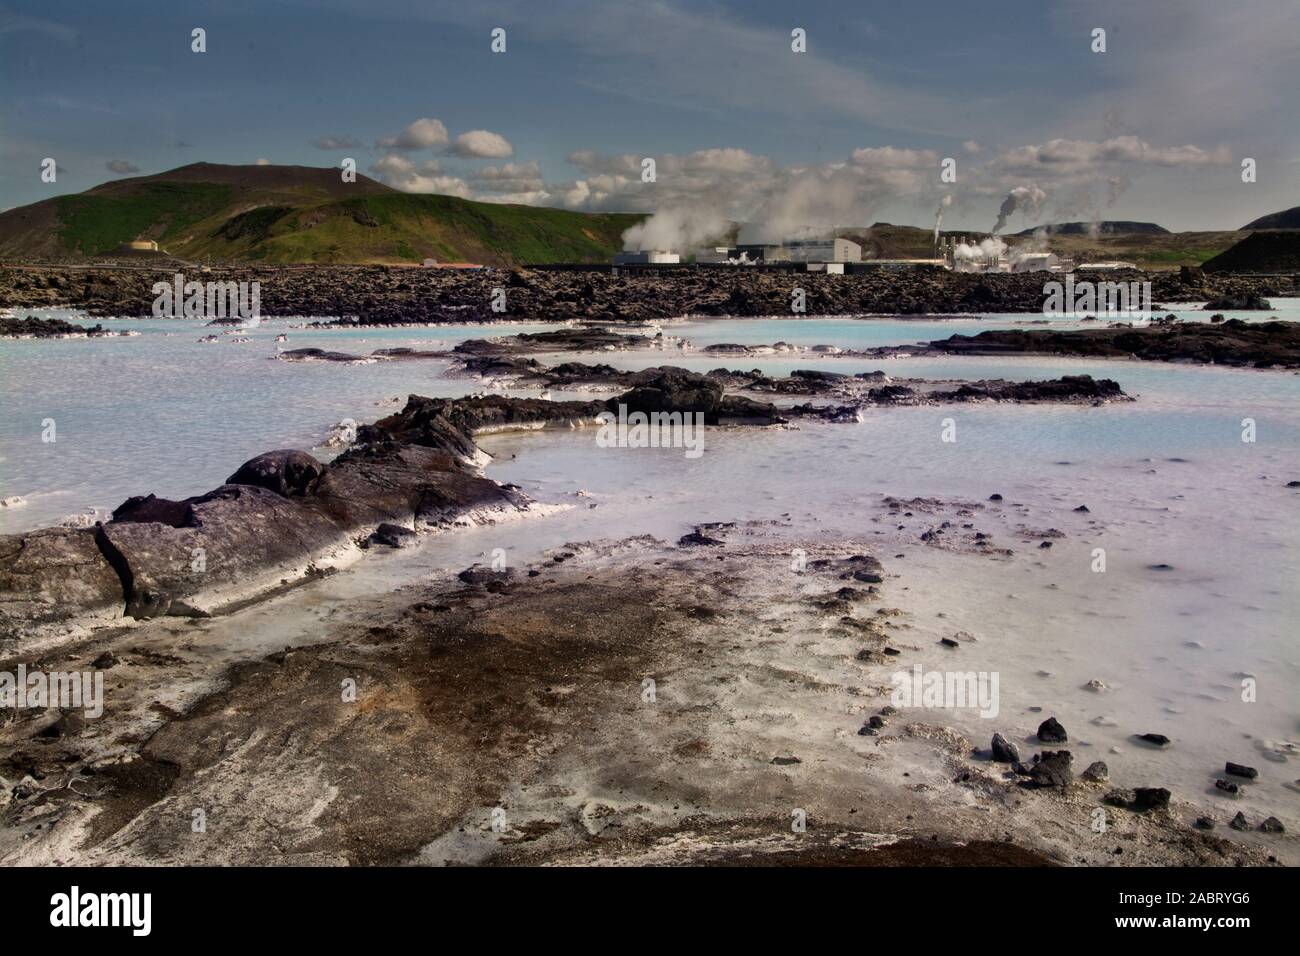 Europa, Island, Reykjanes Halbinsel, Grindavík, Blue Lagoon, einem geothermischen Spa neben dem geothermiekraftwerk Svartsengi Stockfoto